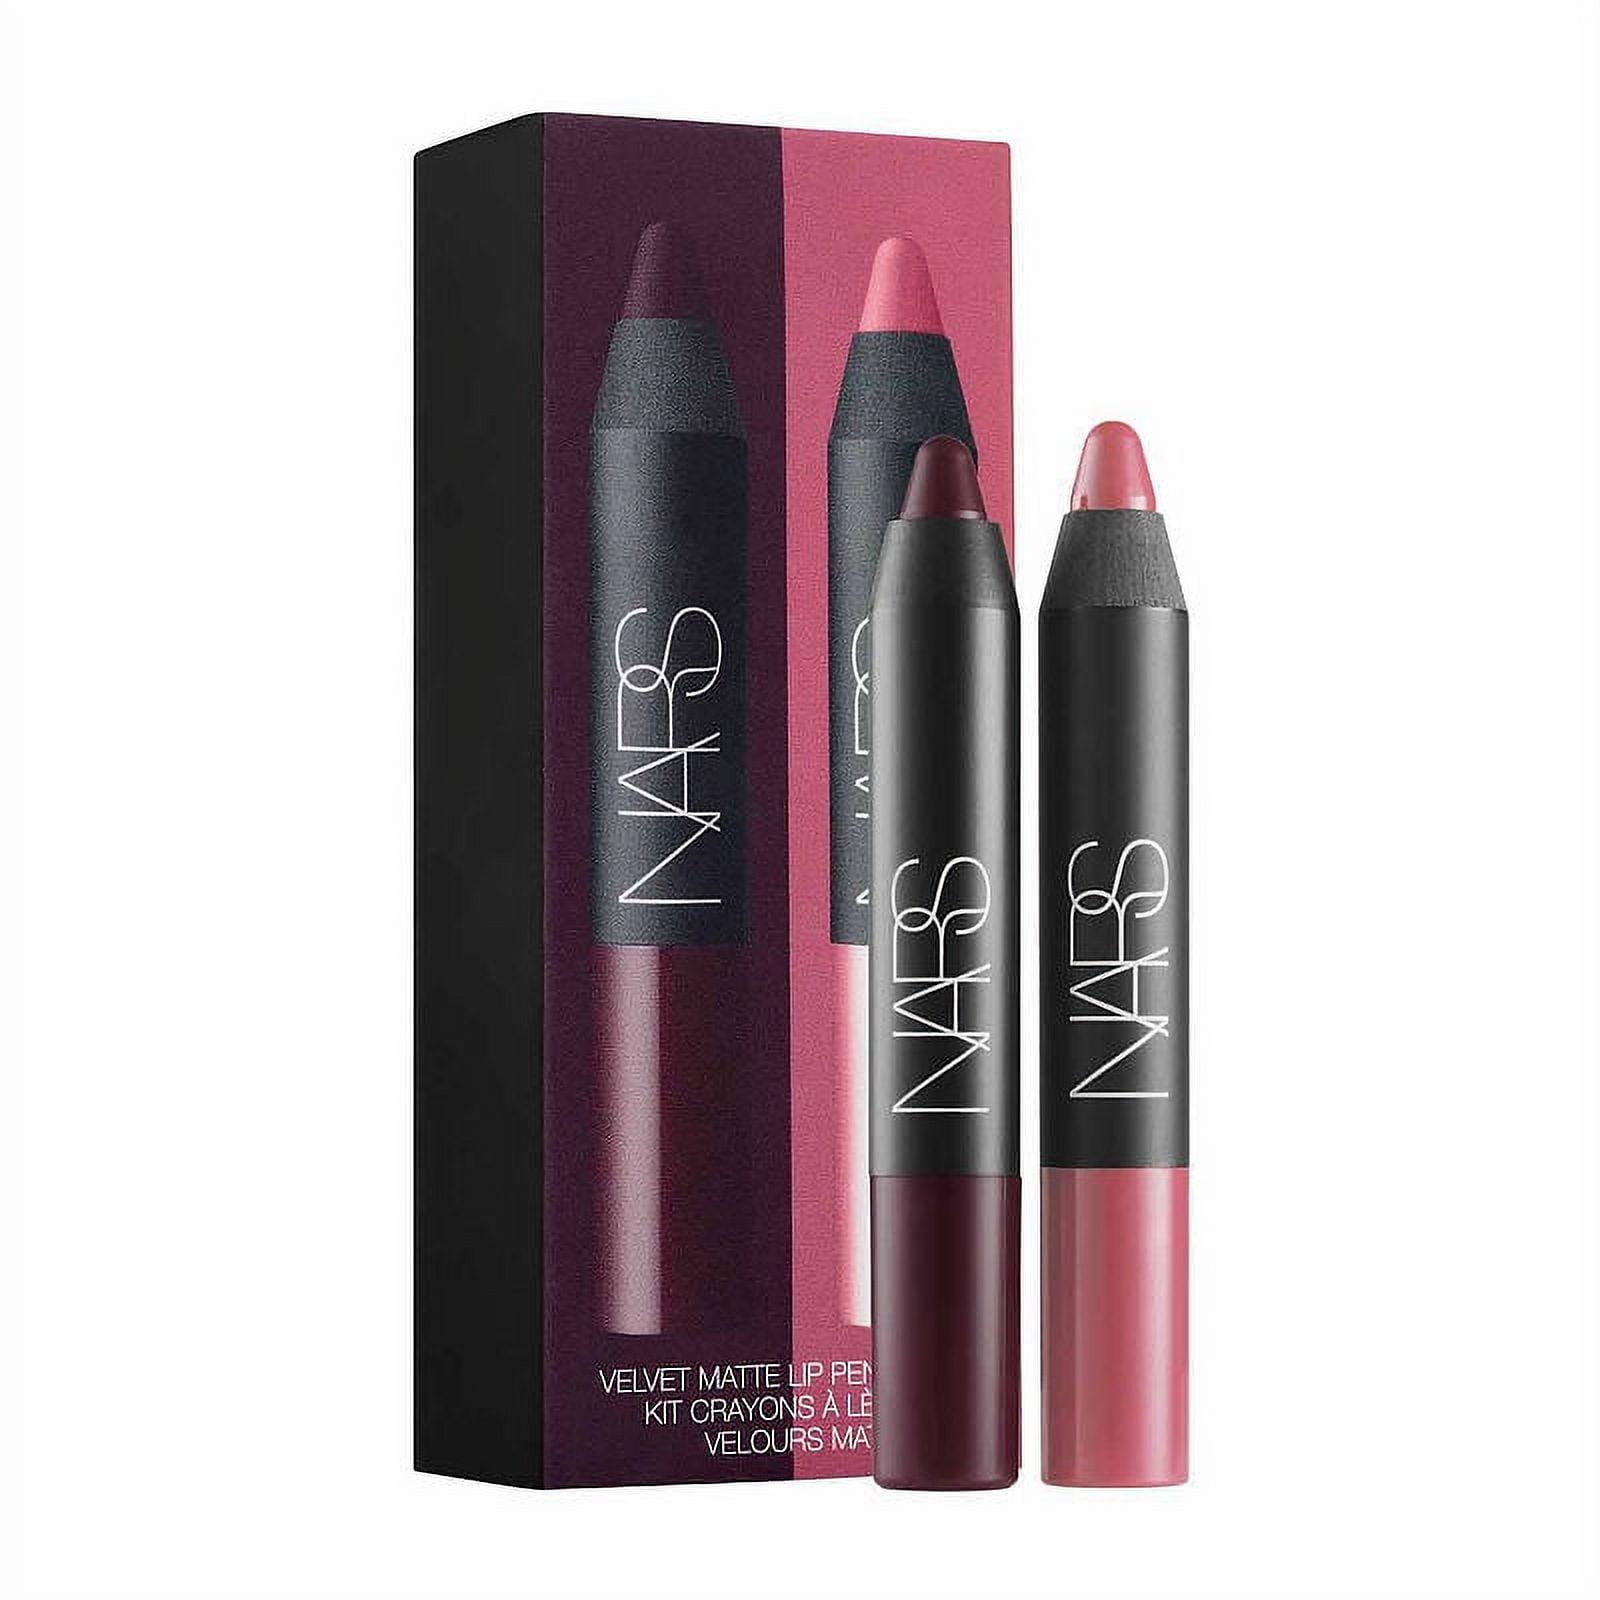 Nars Lip Pencil Shade Good Times🍑 , swipe për të parë nuancën🌞 ` ` ` ` `  ` ` ` ` ` ` ` #narslipstick #narsgoodtimes #lips #makeup…